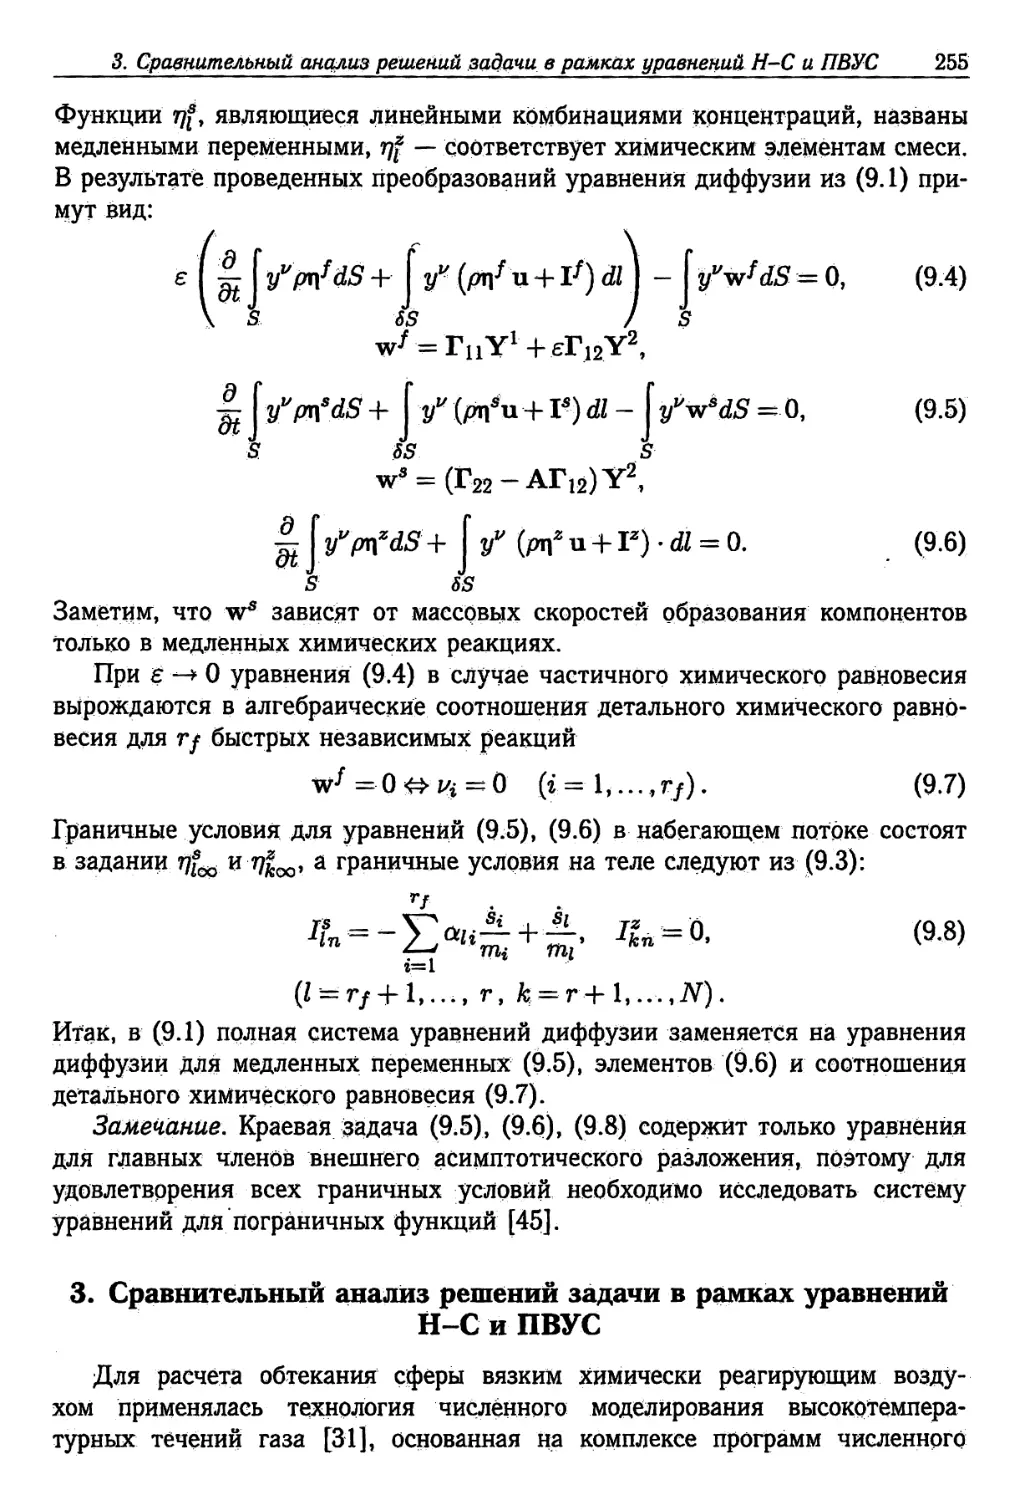 3. Сравнительный анализ решений задачи в рамках уравнений Н-С и ПВУС